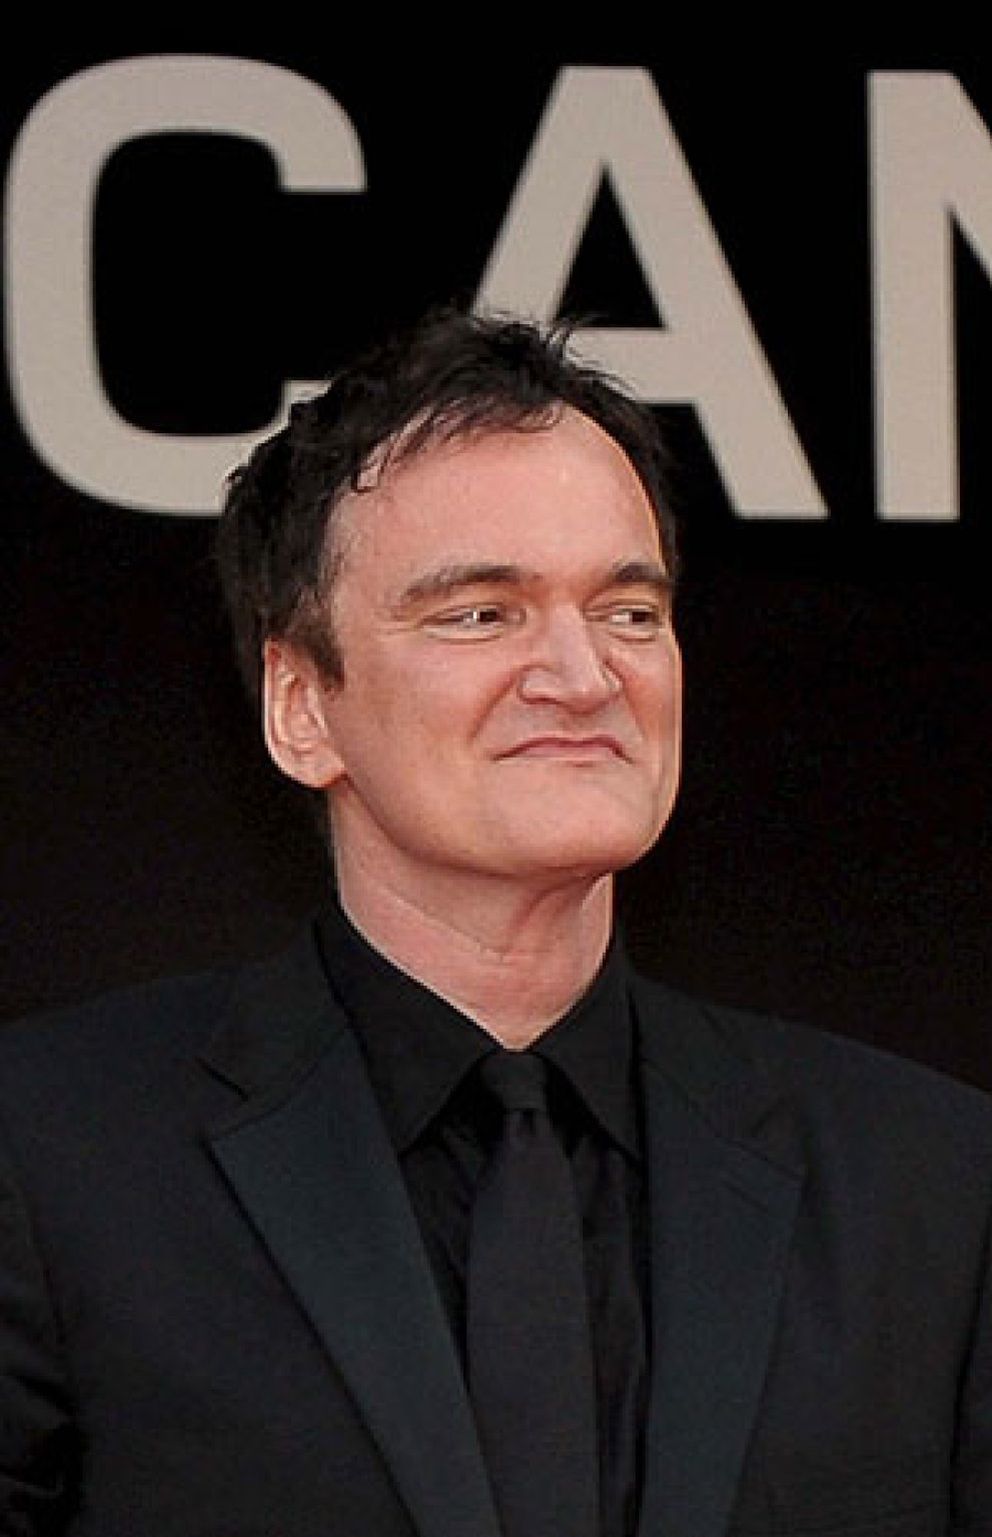 Foto: Tarantino estará en San Sebastian junto a lo último de Woody Allen y Ang Lee